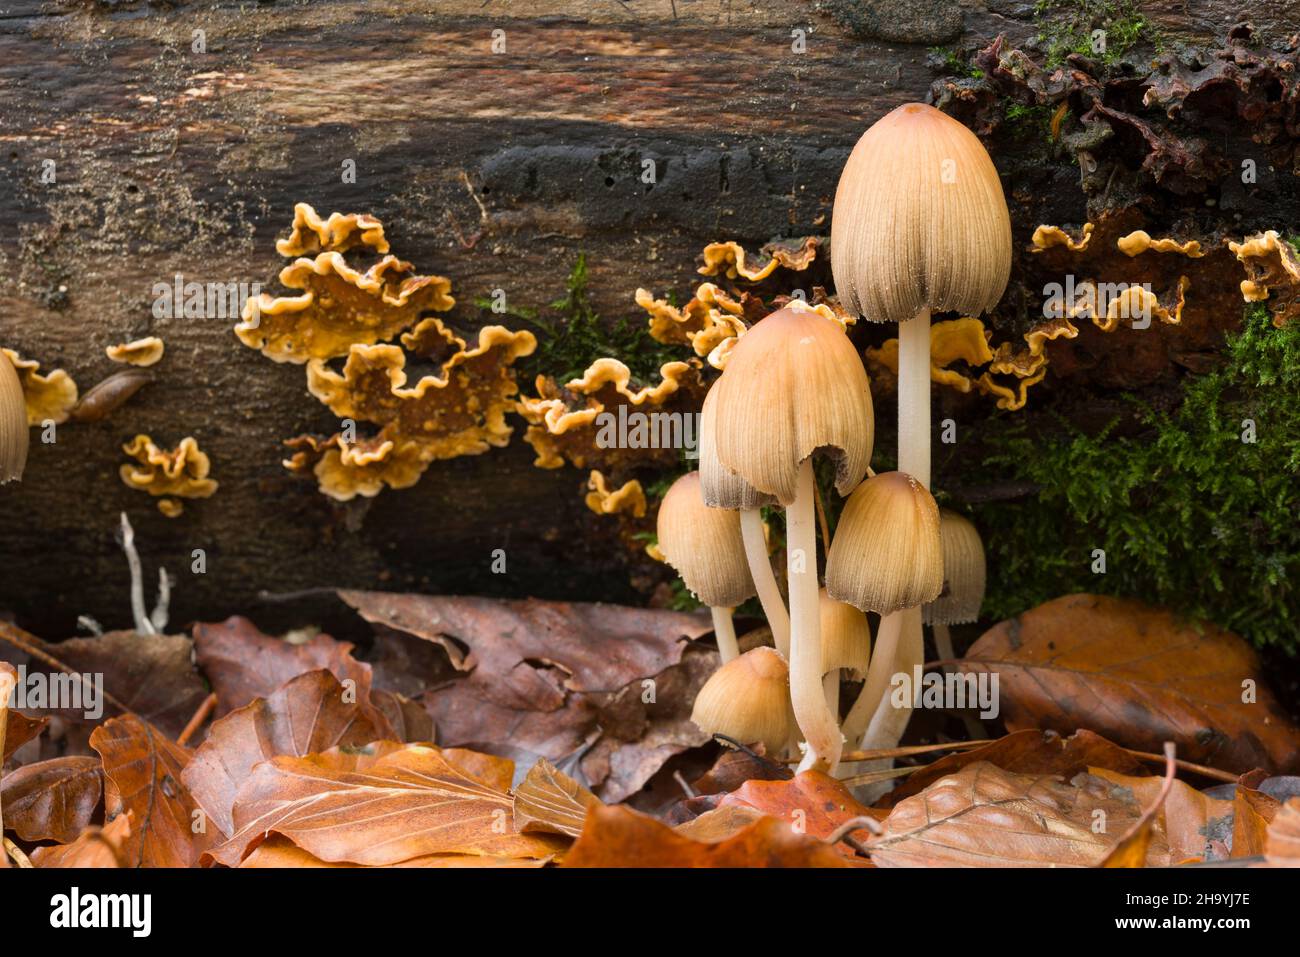 Eine Gruppe von glitzernden Inkcap-Pilzen (Coprinellus micaceus) auf dem Boden eines Laubwaldes bei Goblin Combe, North Somerset, England. Stockfoto